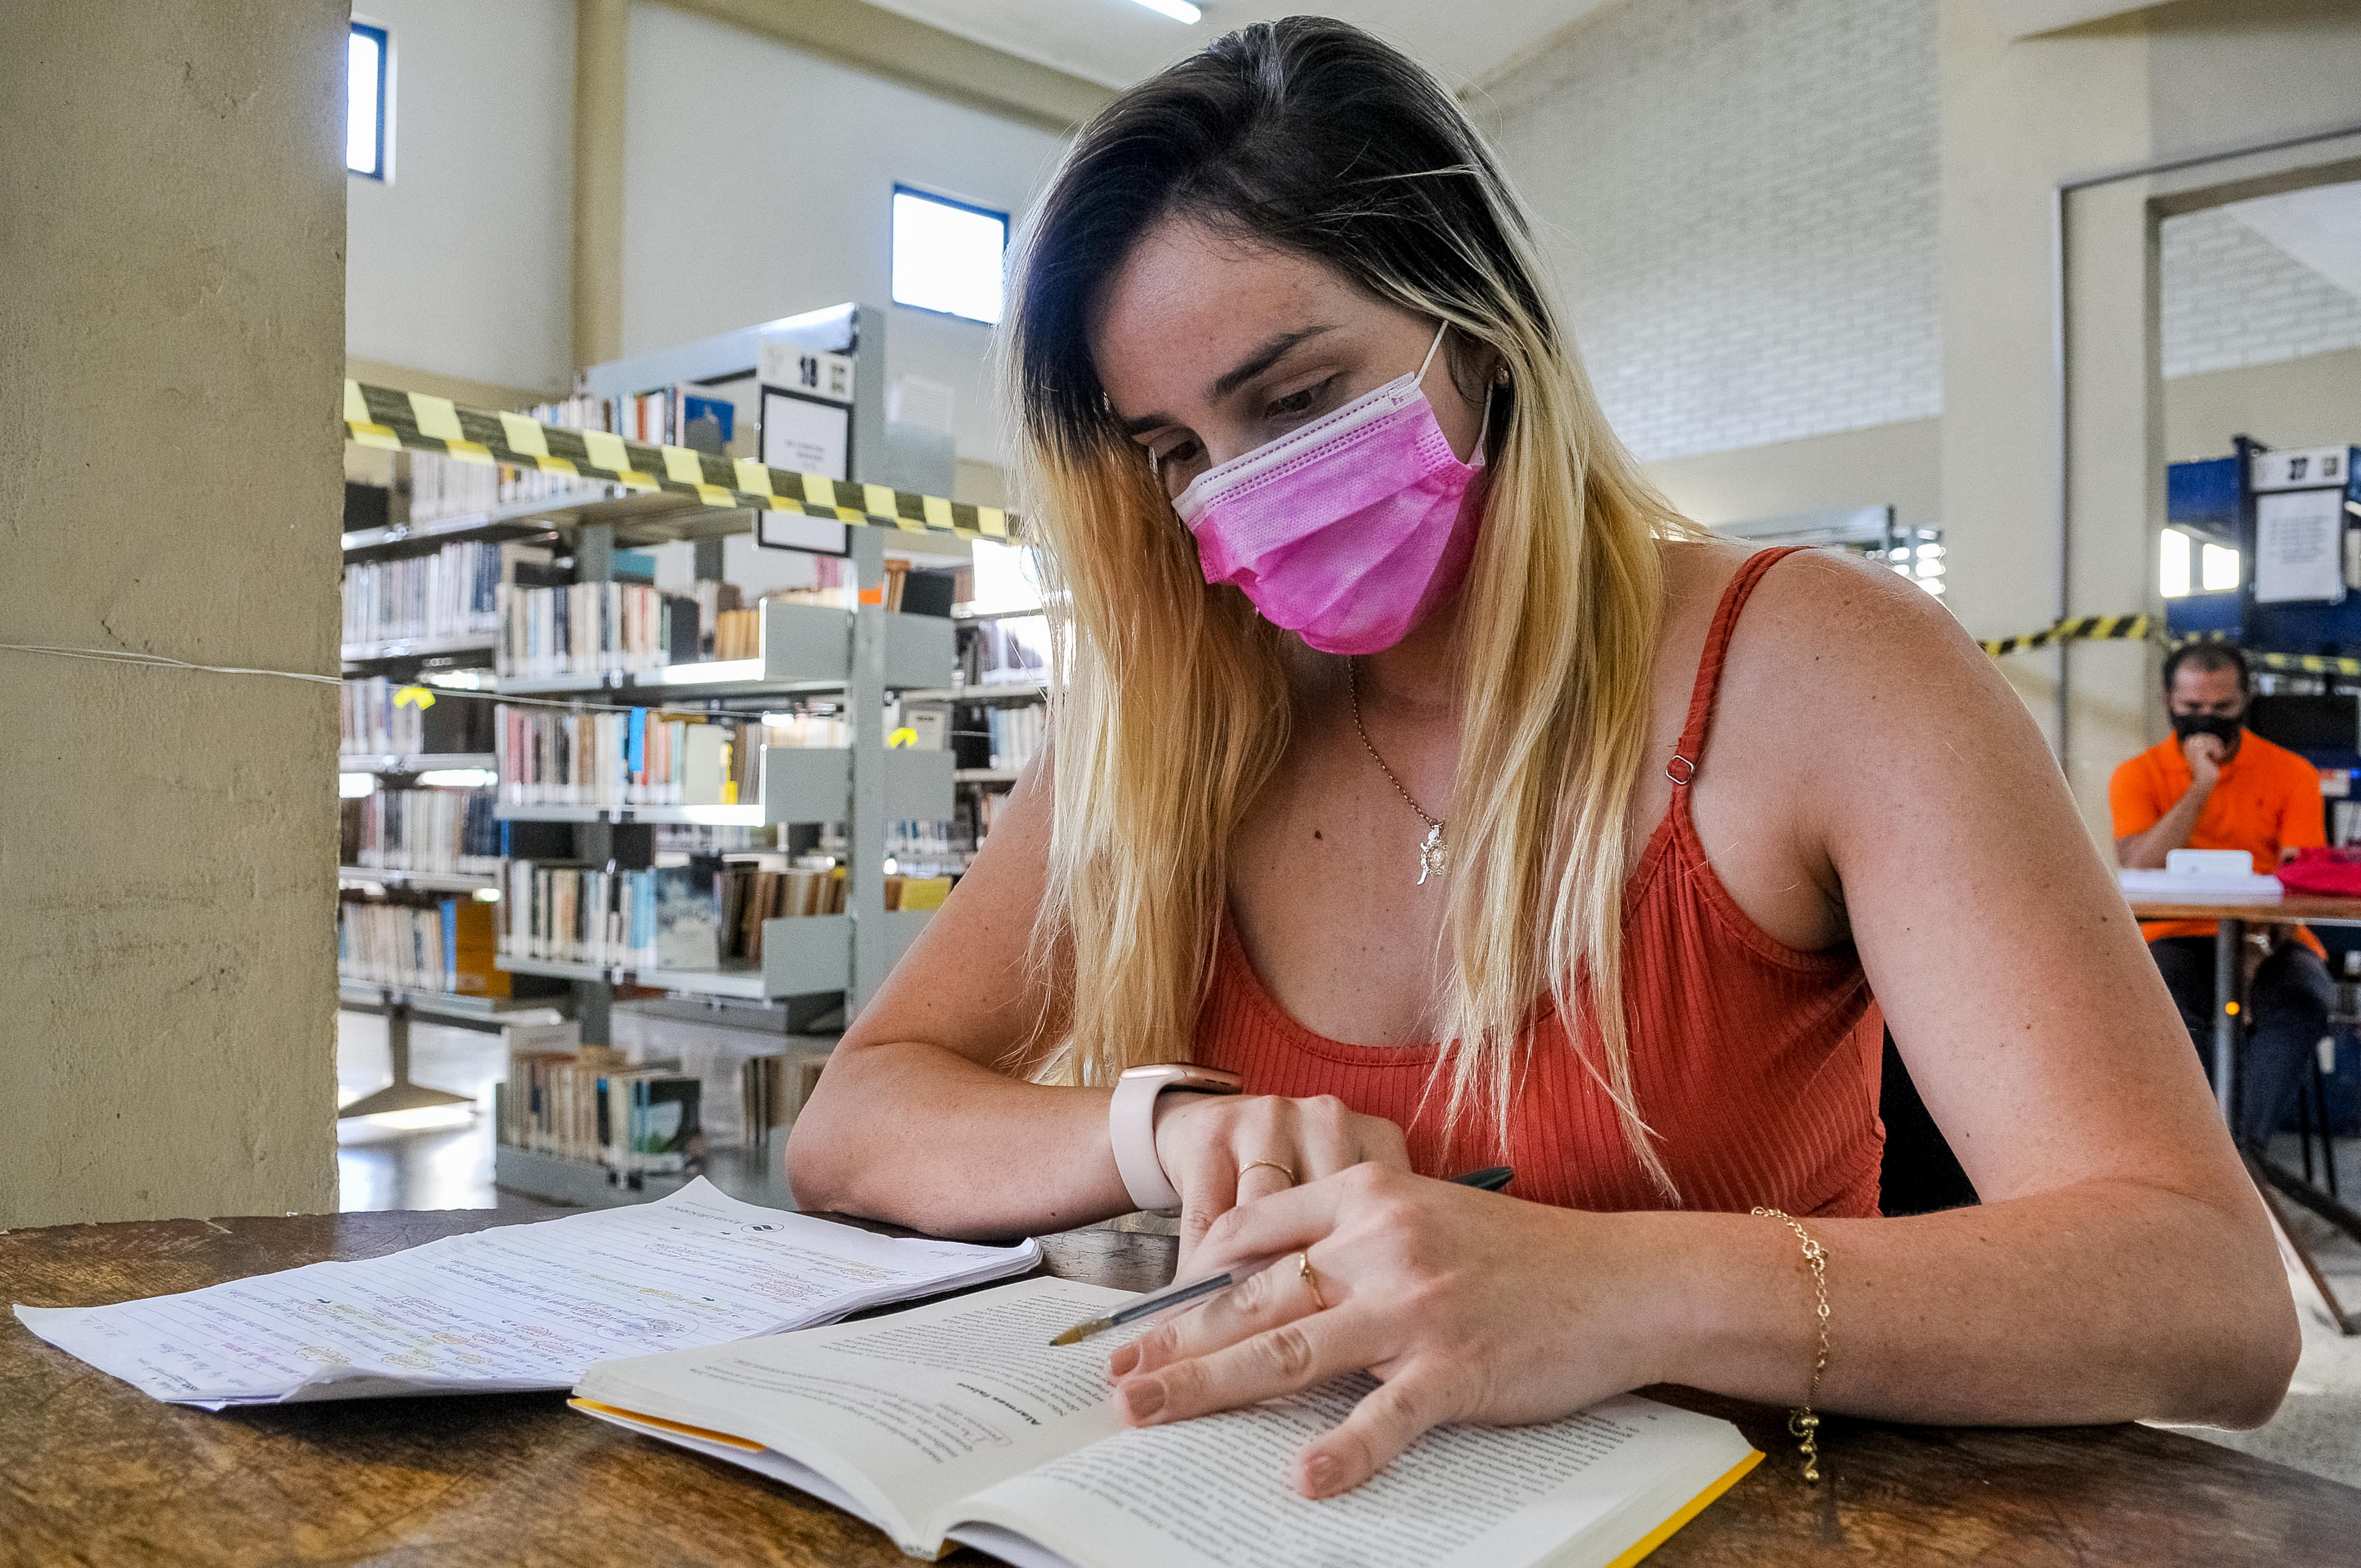 Um local tranquilo para estudar? Visite uma biblioteca pública – Agência  Brasília